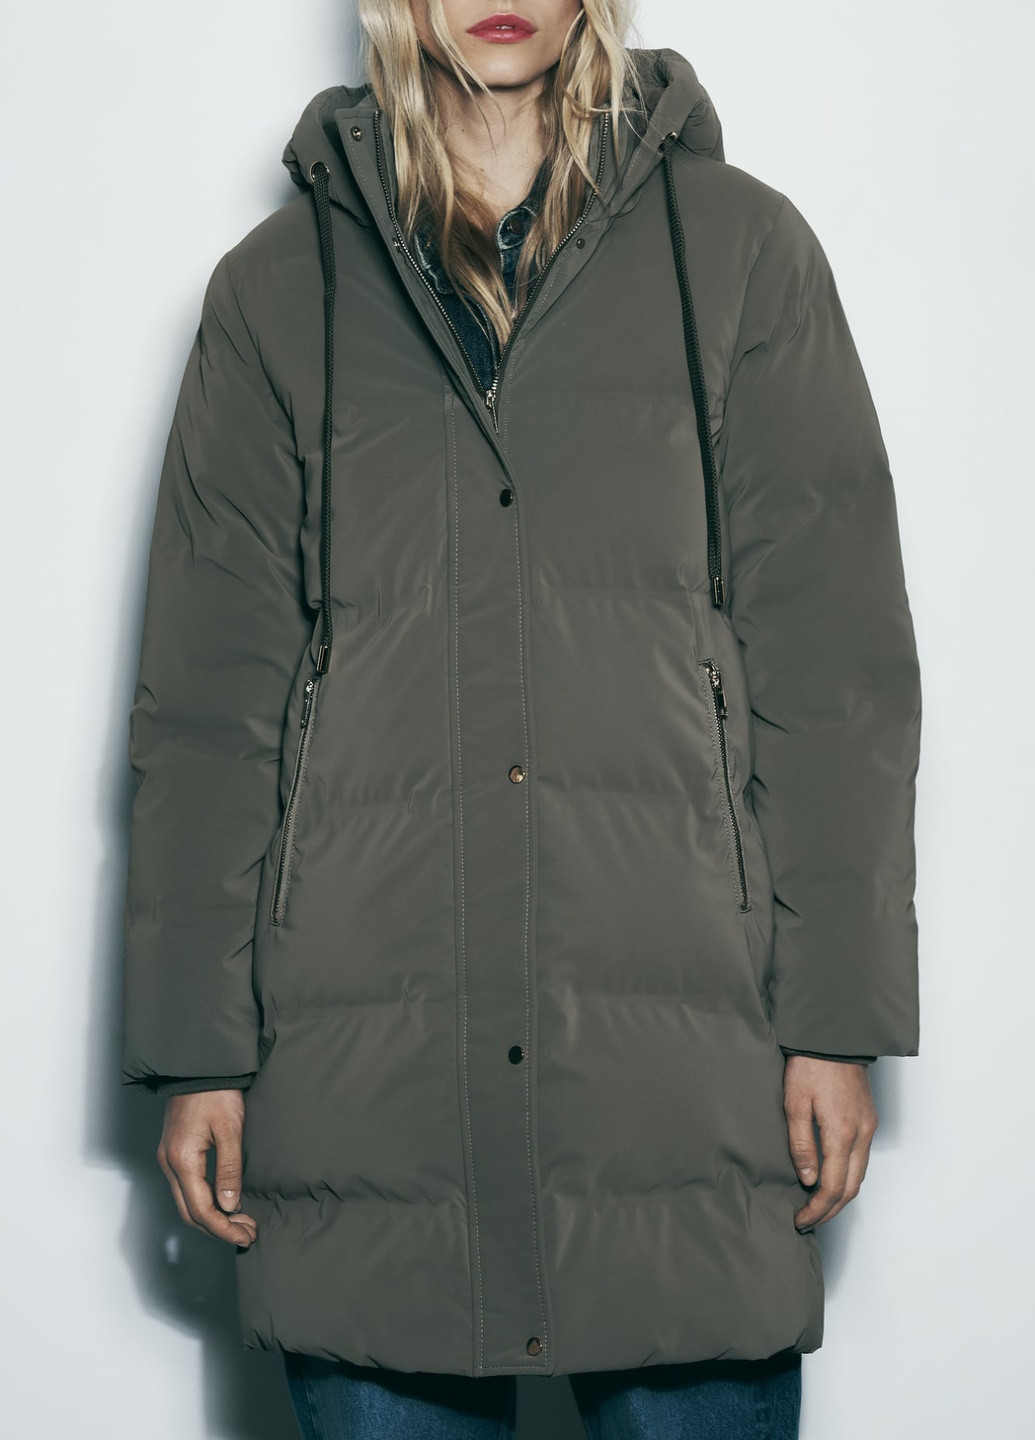 Оливкова (хакі) зимня куртка Zara